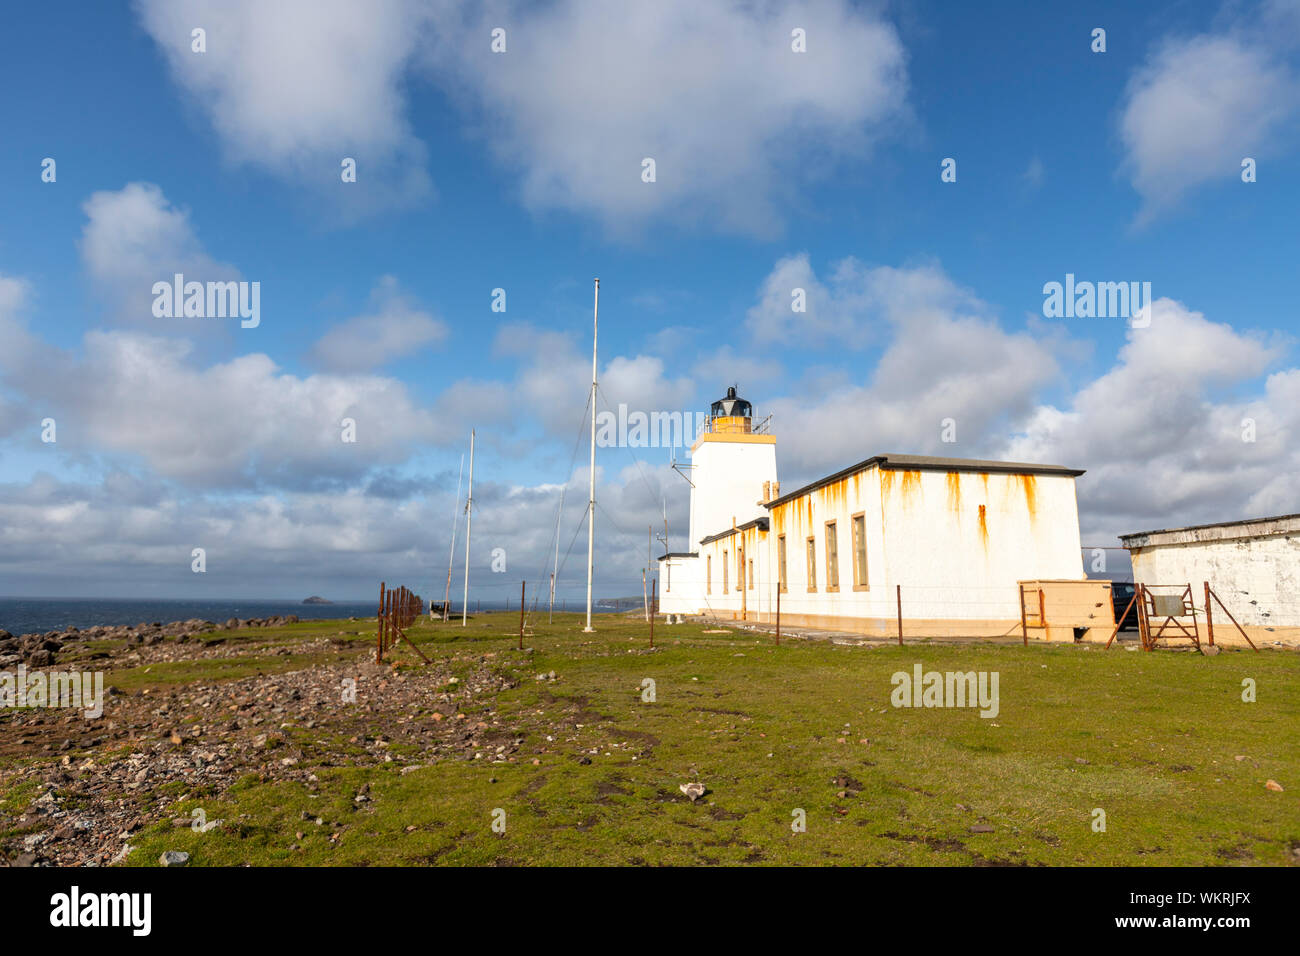 Eshaness Lighthouse, Northmavine peninsula, Mainland, Shetland, Scotland, UK Stock Photo